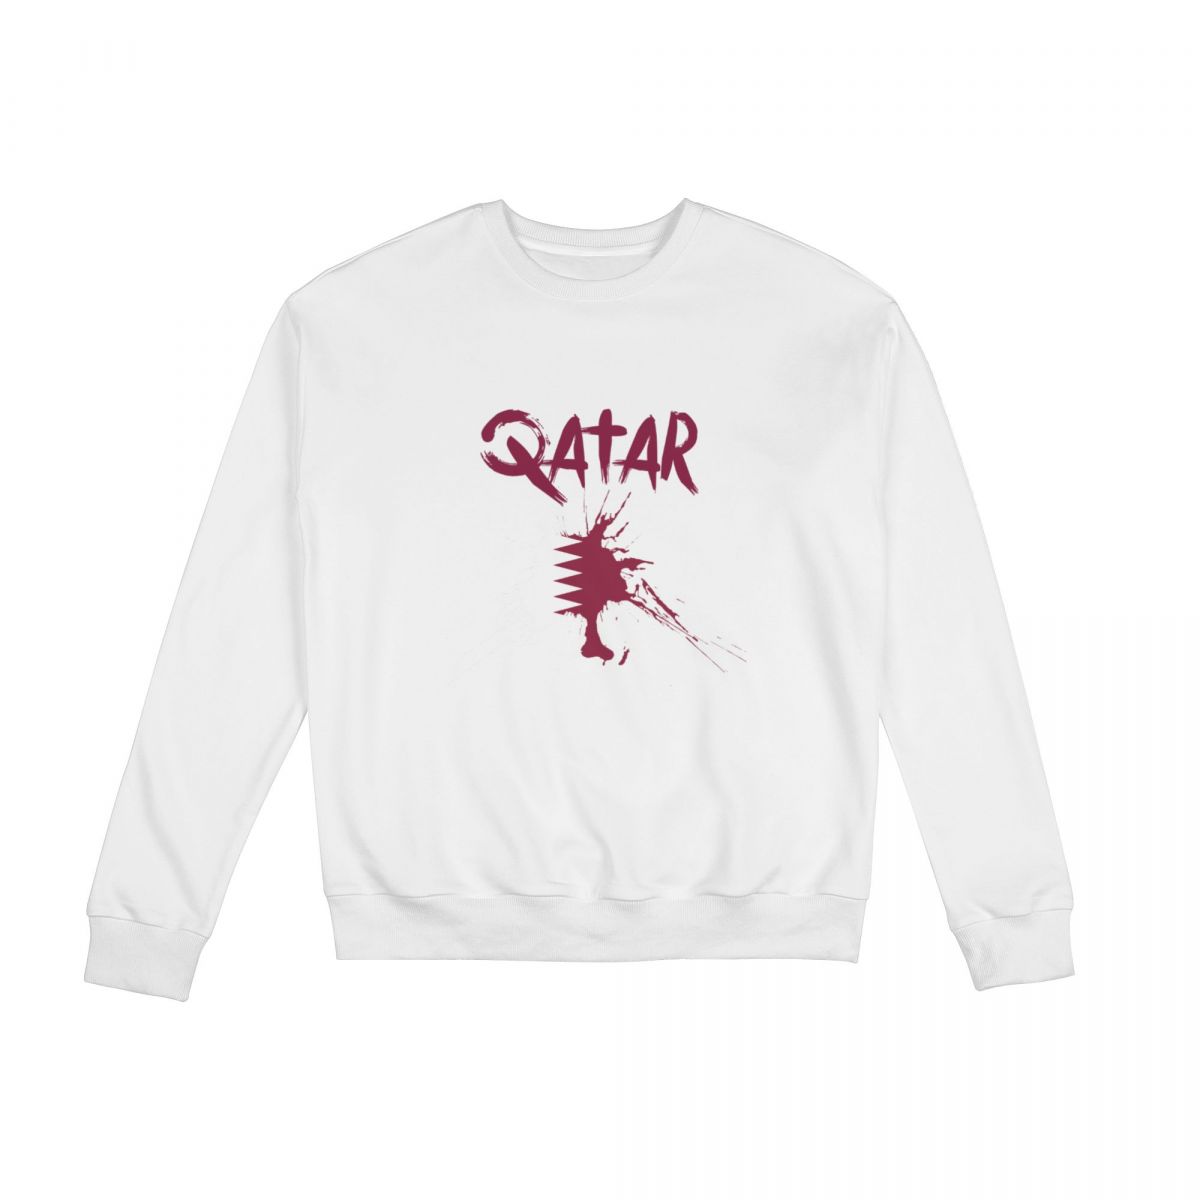 Qatar Ink Spatter Unisex Round Neck Sweatshirt